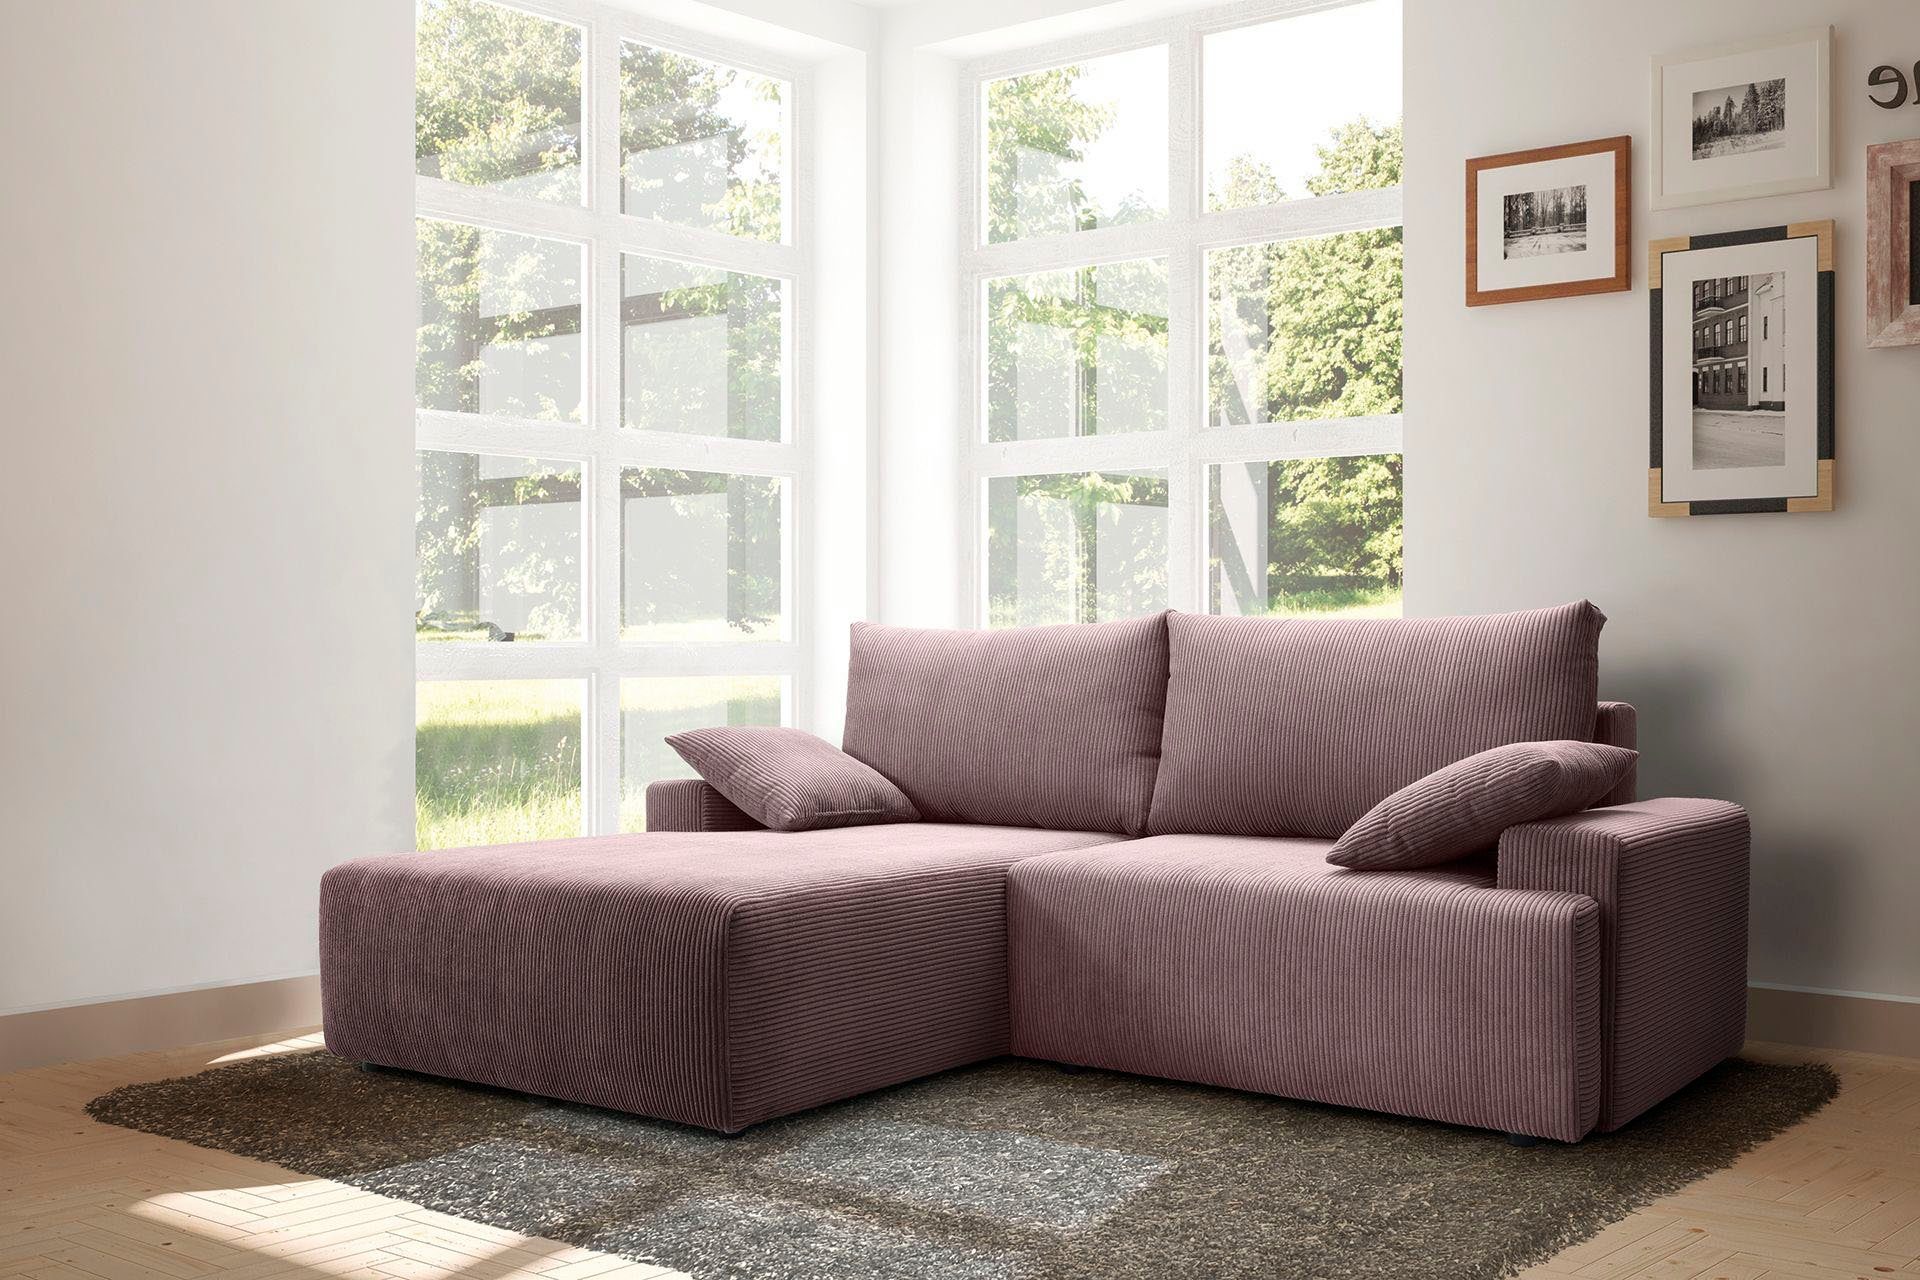 Cord-Farben sofa - Bettkasten fashion inklusive verschiedenen Orinoko, rose in und exxpo Bettfunktion Ecksofa